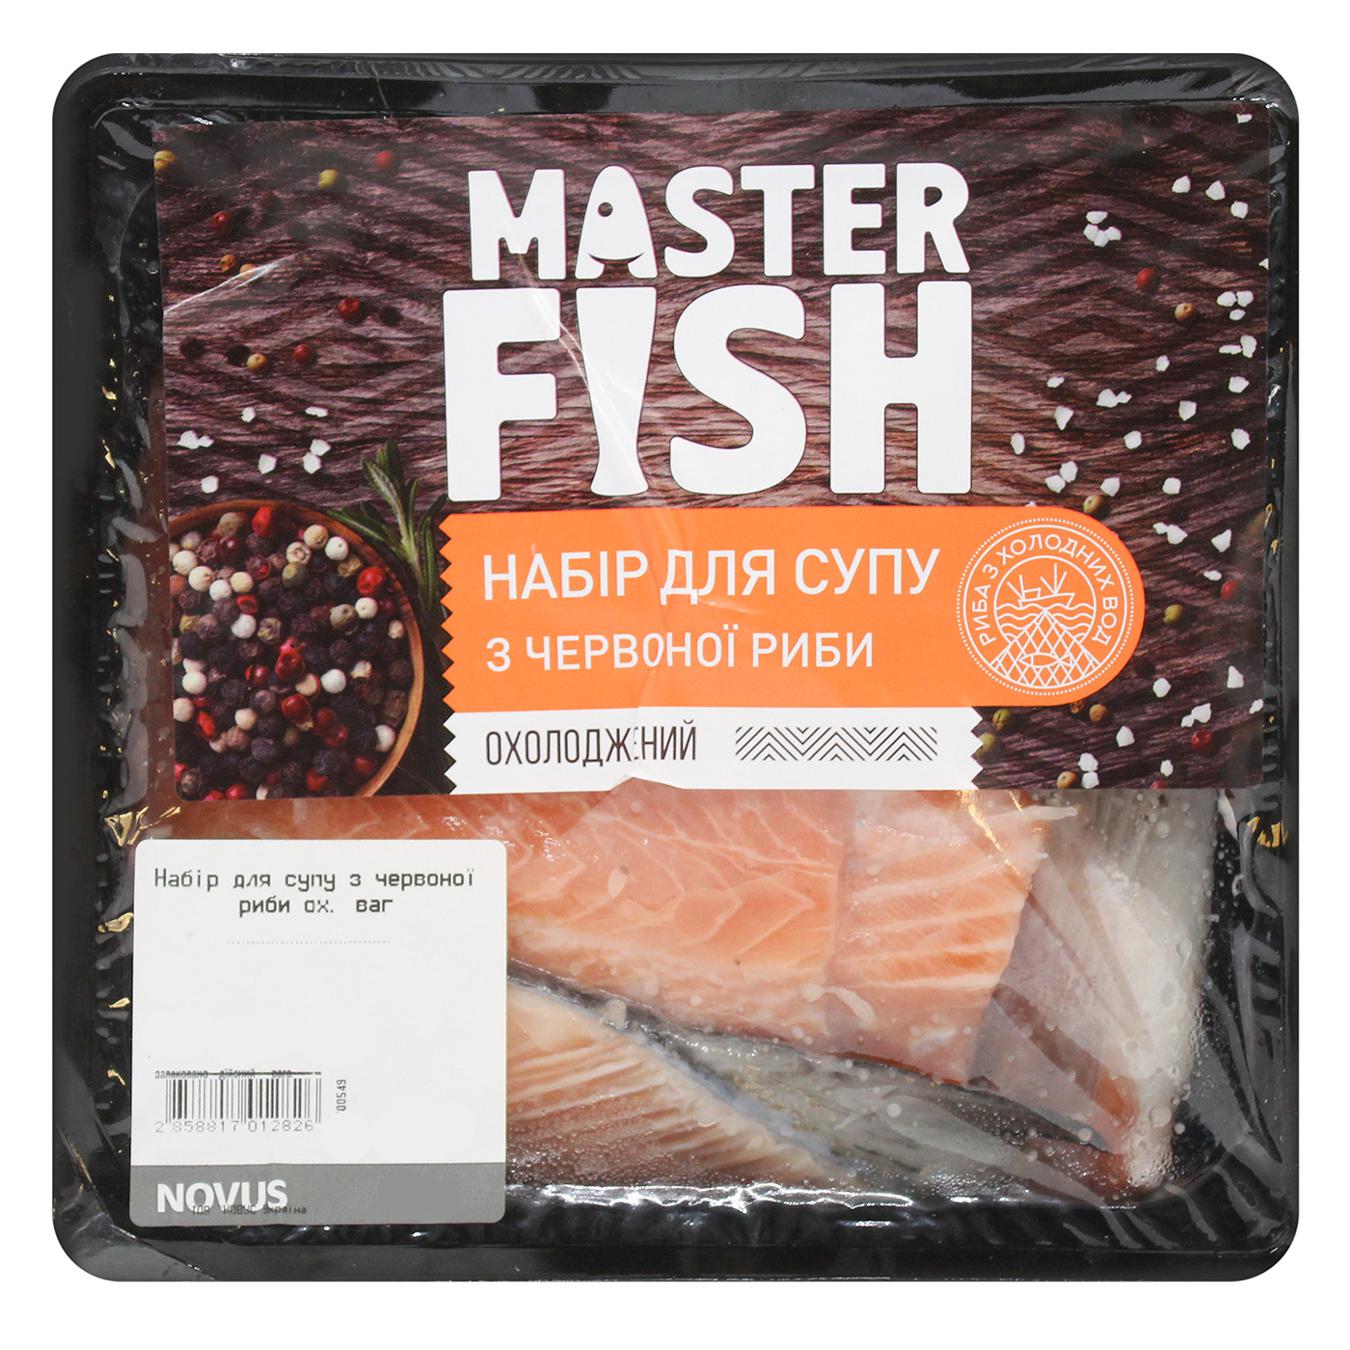 Набор для супа Master Fish из красной рыбы охлажденный вес 900-1200г в упаковке